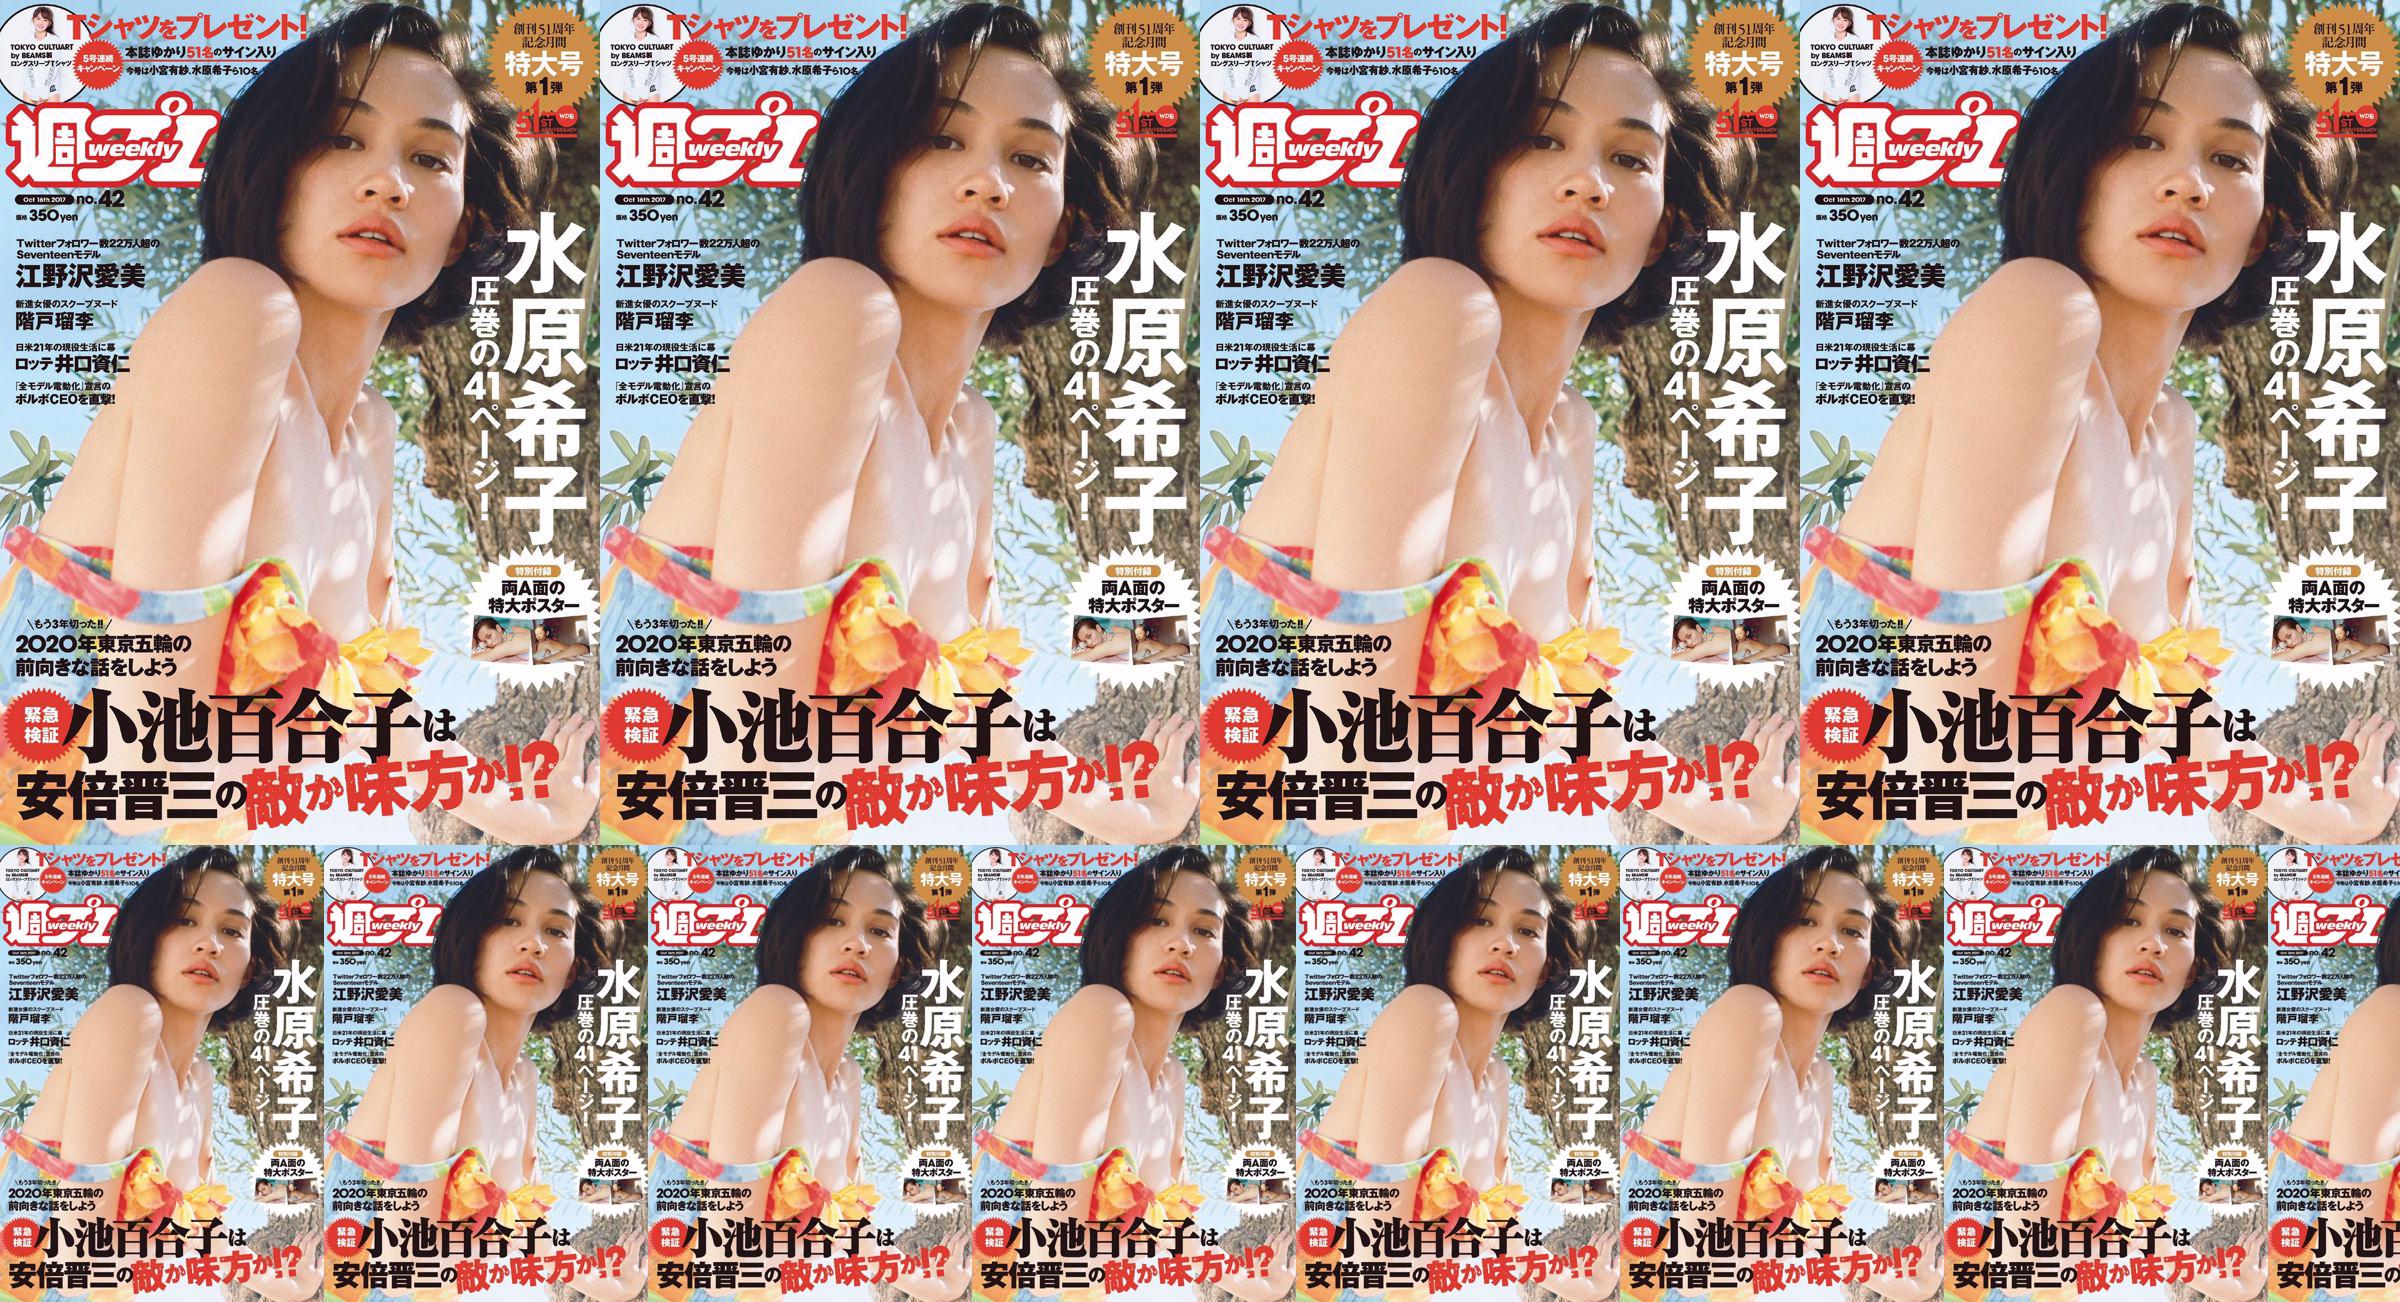 Kiko Mizuhara Manami Enosawa Serina Fukui Miu Nakamura Ruri Shinato [Weekly Playboy] 2017 No.42 Photo Magazine No.06f869 Page 1